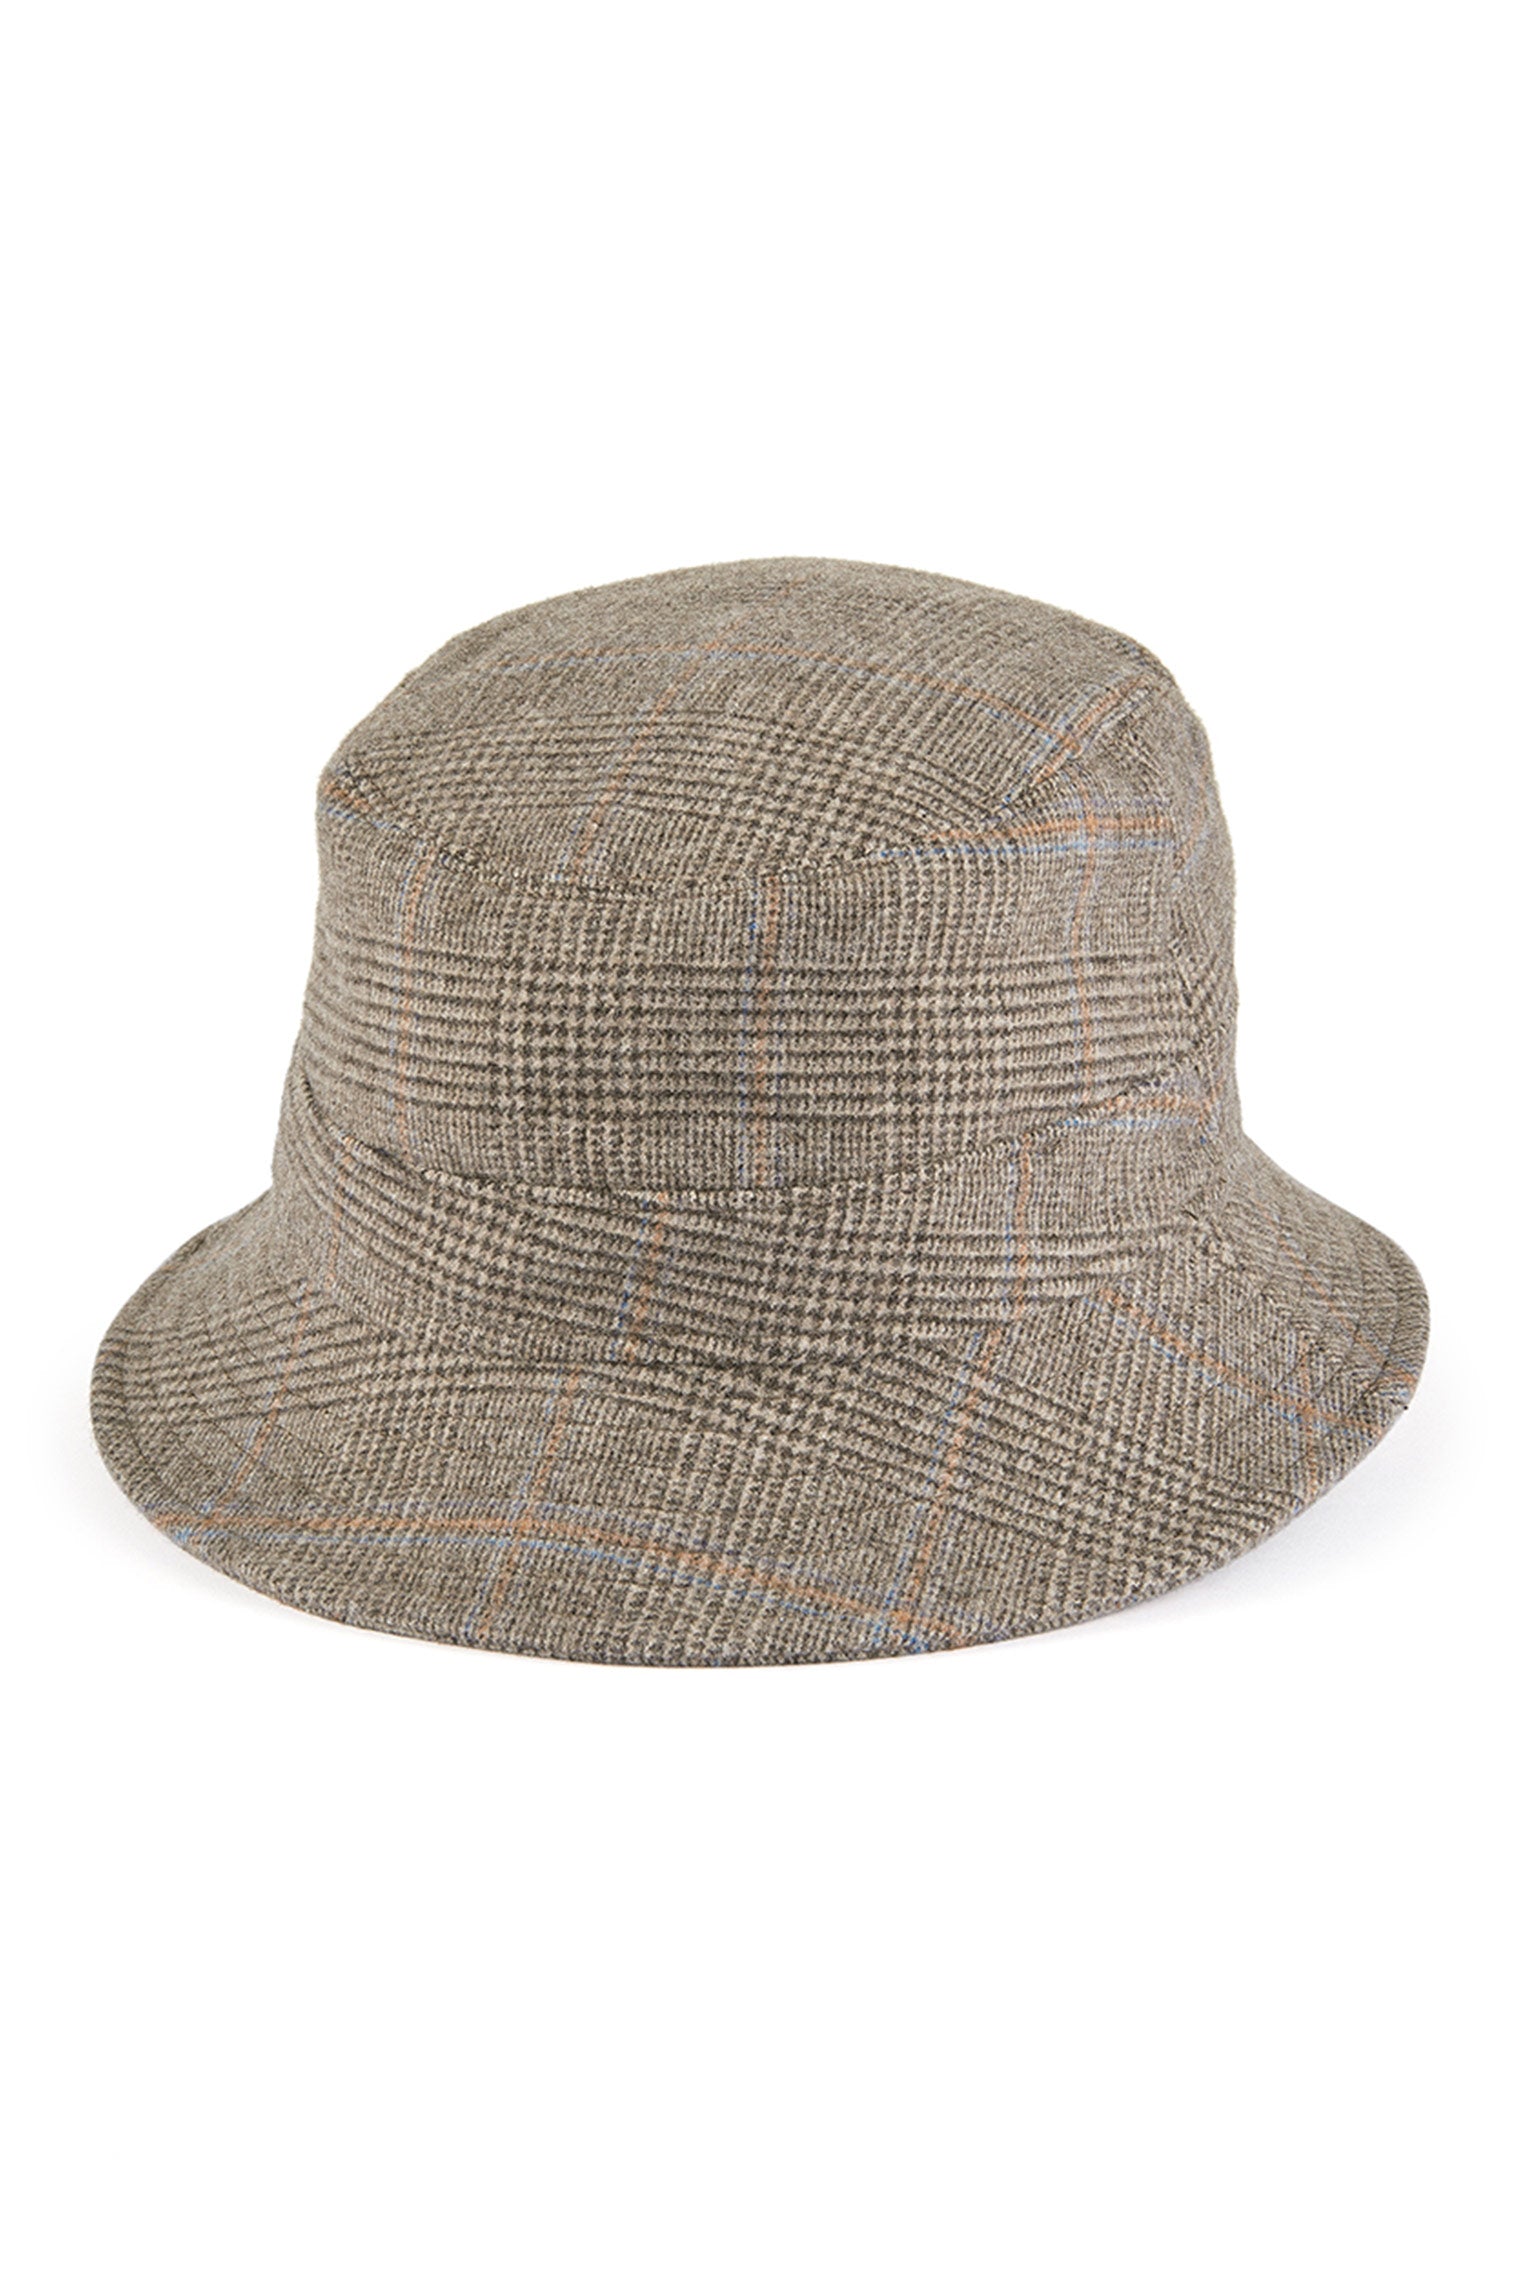 Escorial Wool Bucket Hat -  - Lock & Co. Hatters London UK